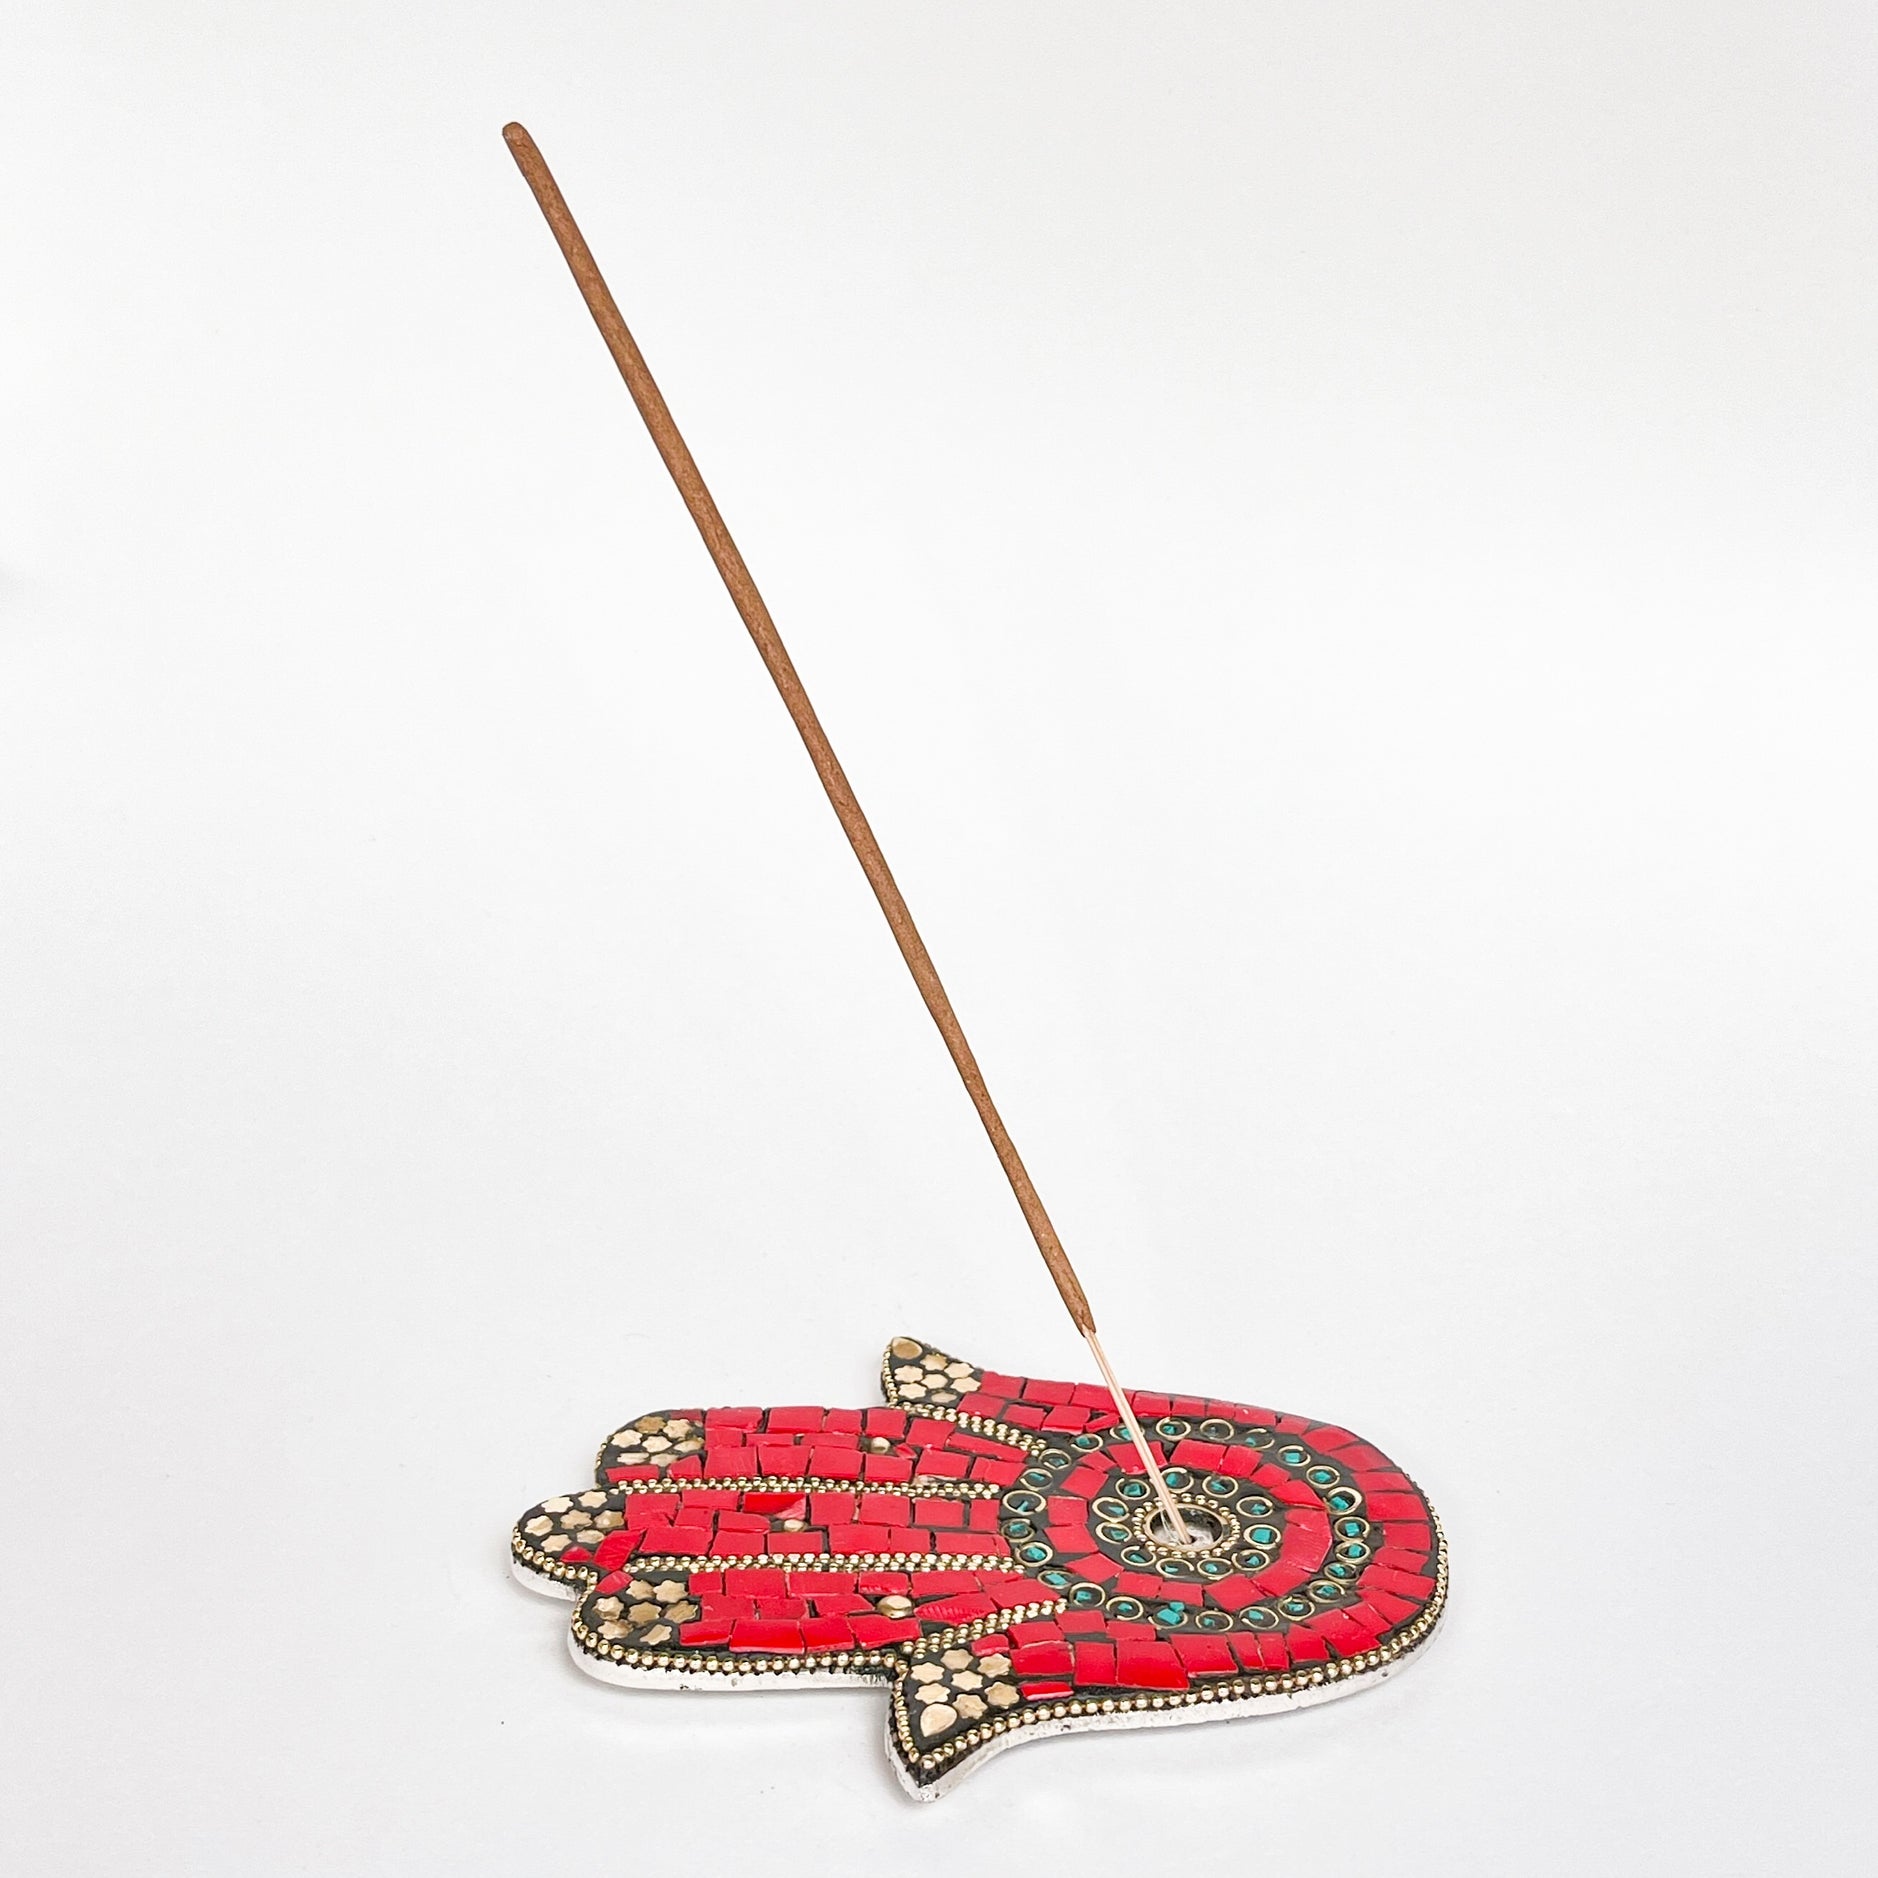 Hamsa Hand Incense Holder (Red) - Incense Holders